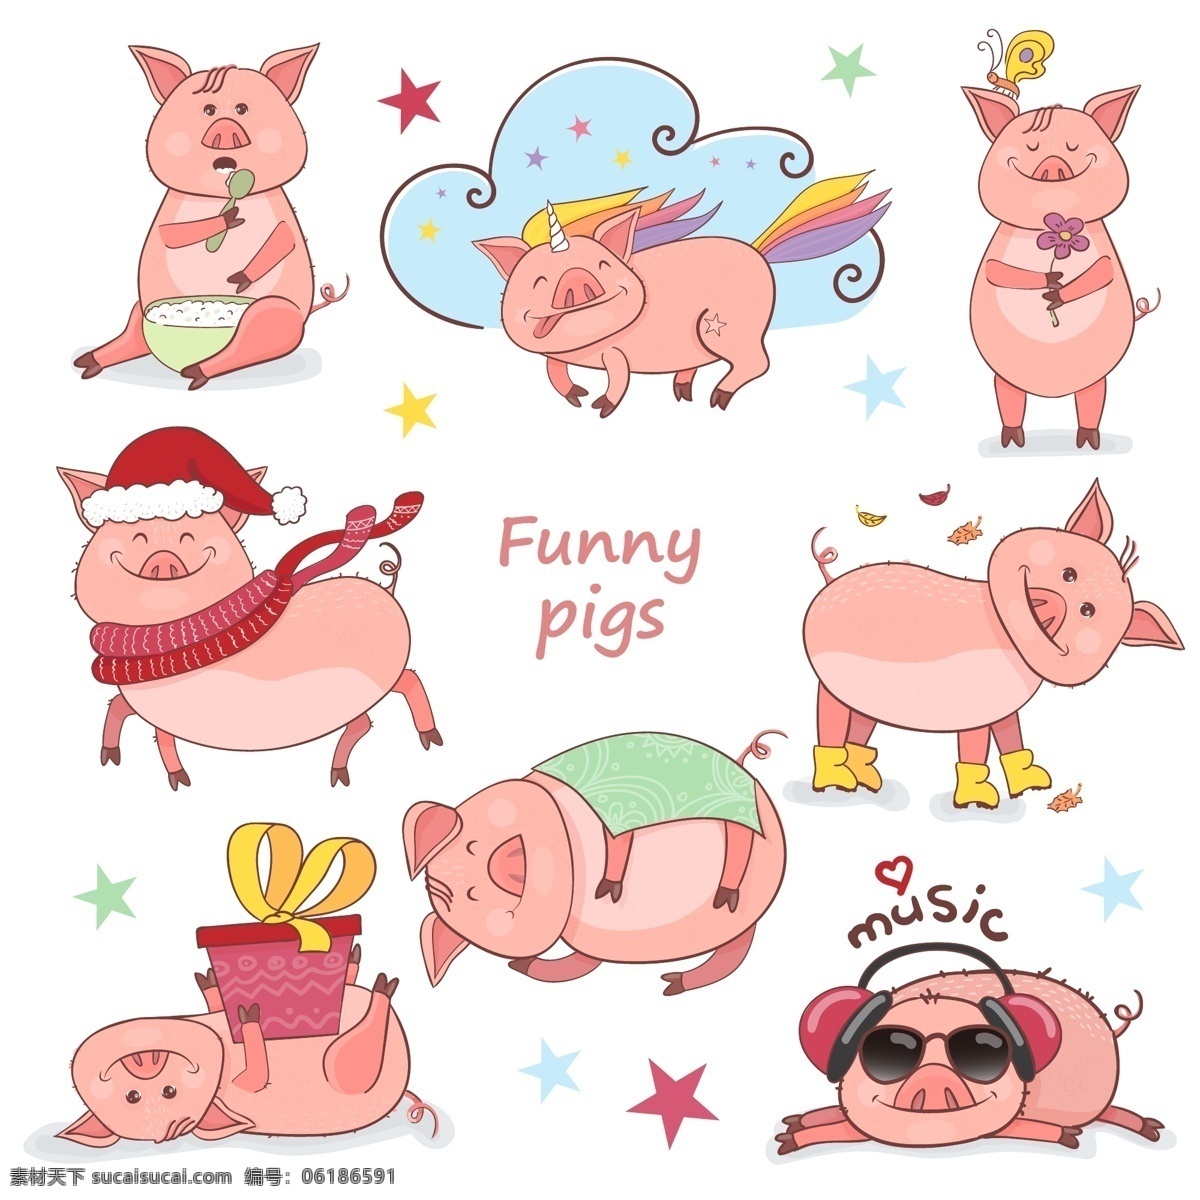 卡通猪集合 矢量猪 可爱猪 猪集合 猪系列动作 猪插画 手绘猪 猪生活 猪年元素 猪吃饭 猪听歌 猪滑冰 猪溜冰 猪睡觉 猪礼物 动物 生物世界 家禽家畜